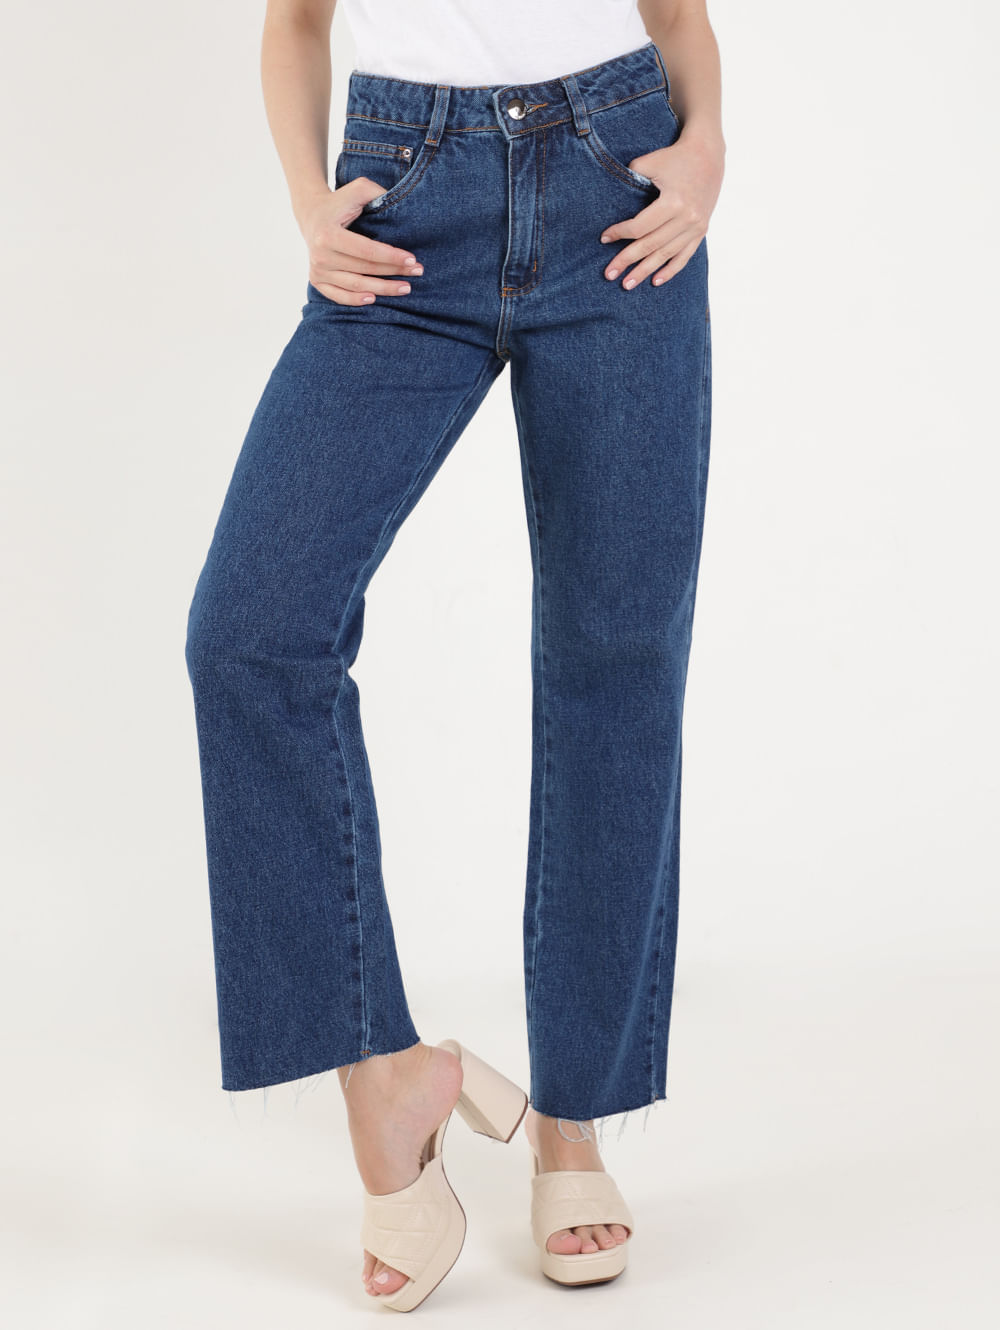 Calça jeans reta masculina e feminina, com zíper de tornozelo, calça azul,  calça jeans flare elegante